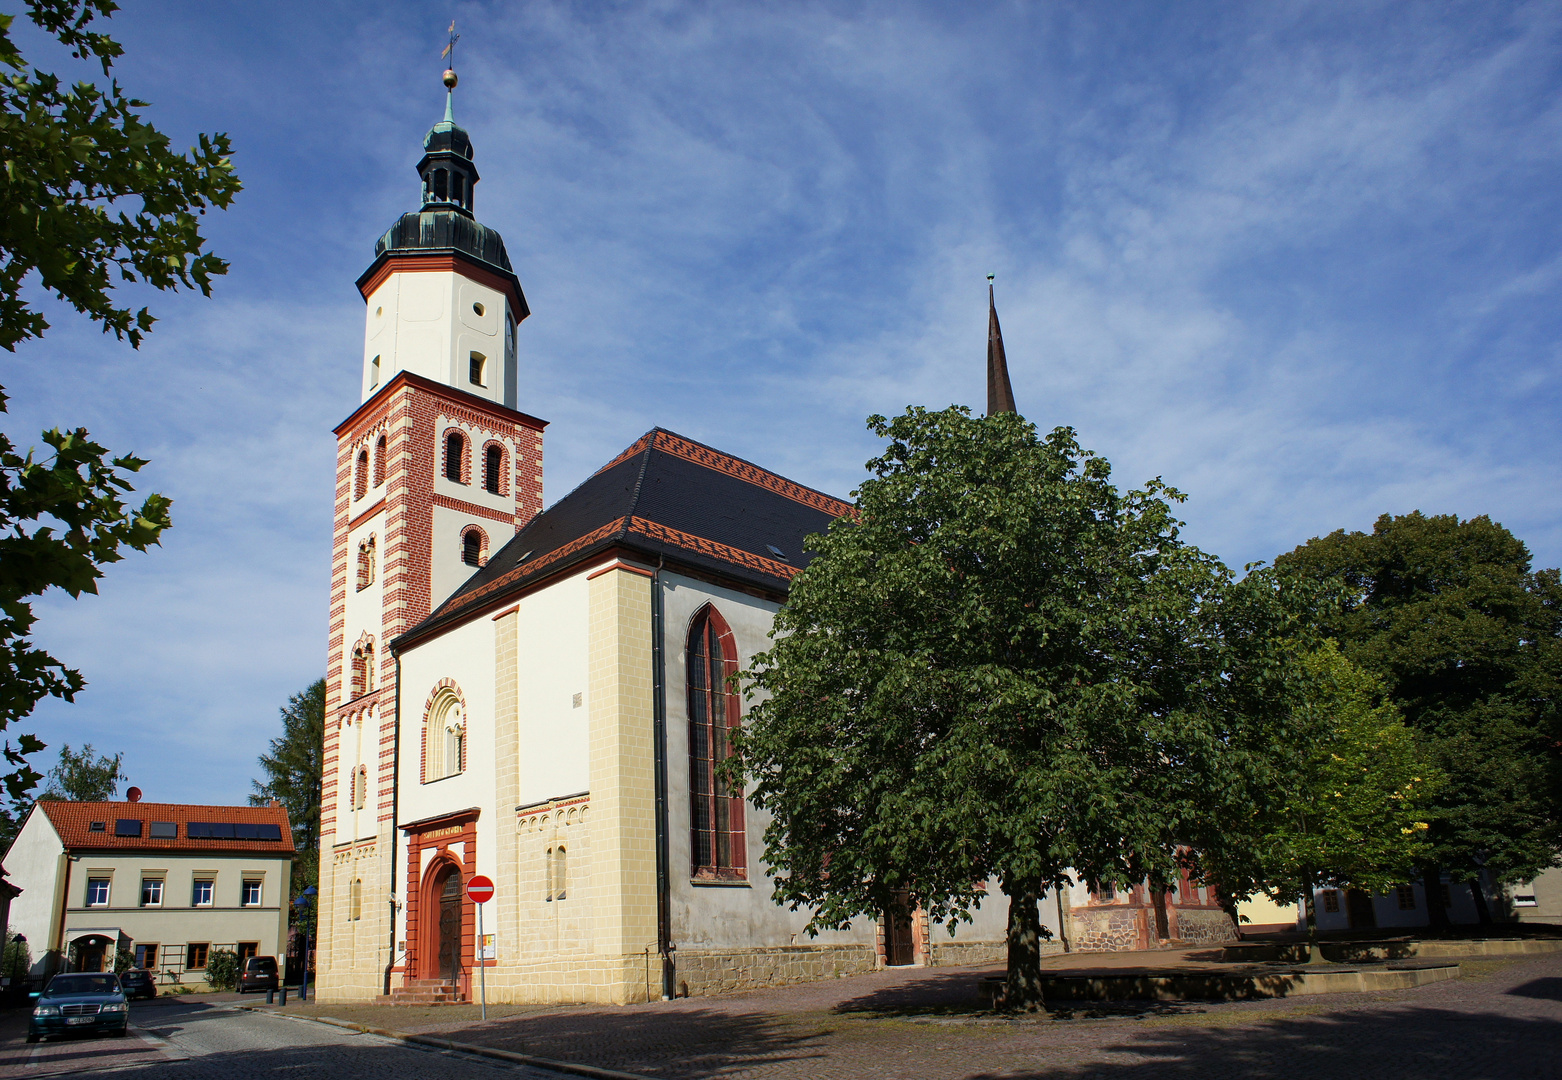 St. Georgen Rötha